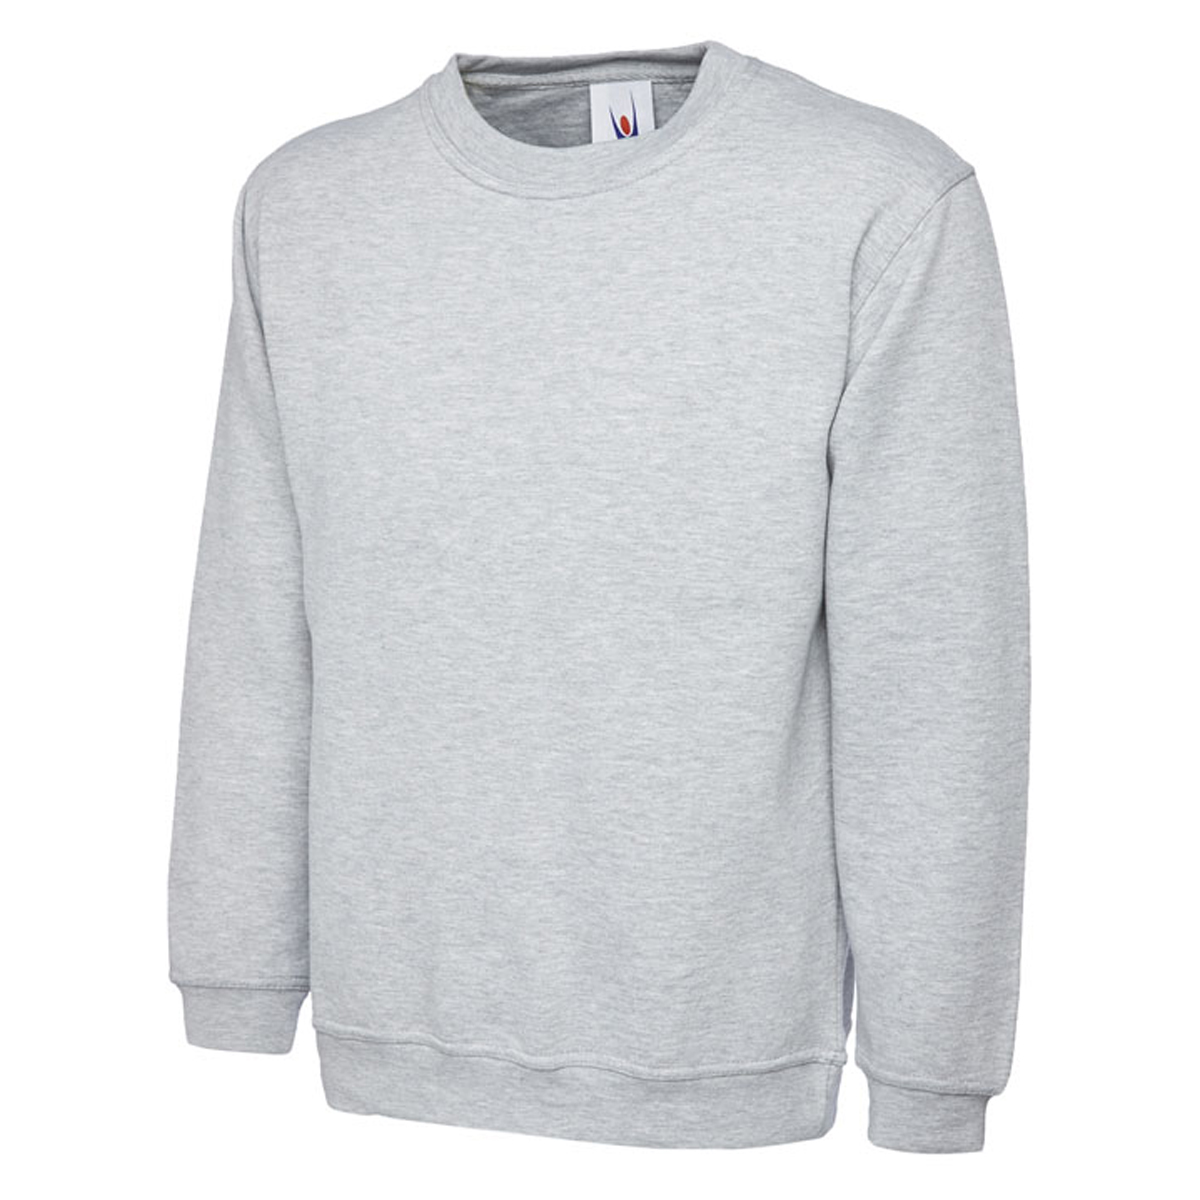 Uc203 300gsm classic sweatshirt - heather grey - large